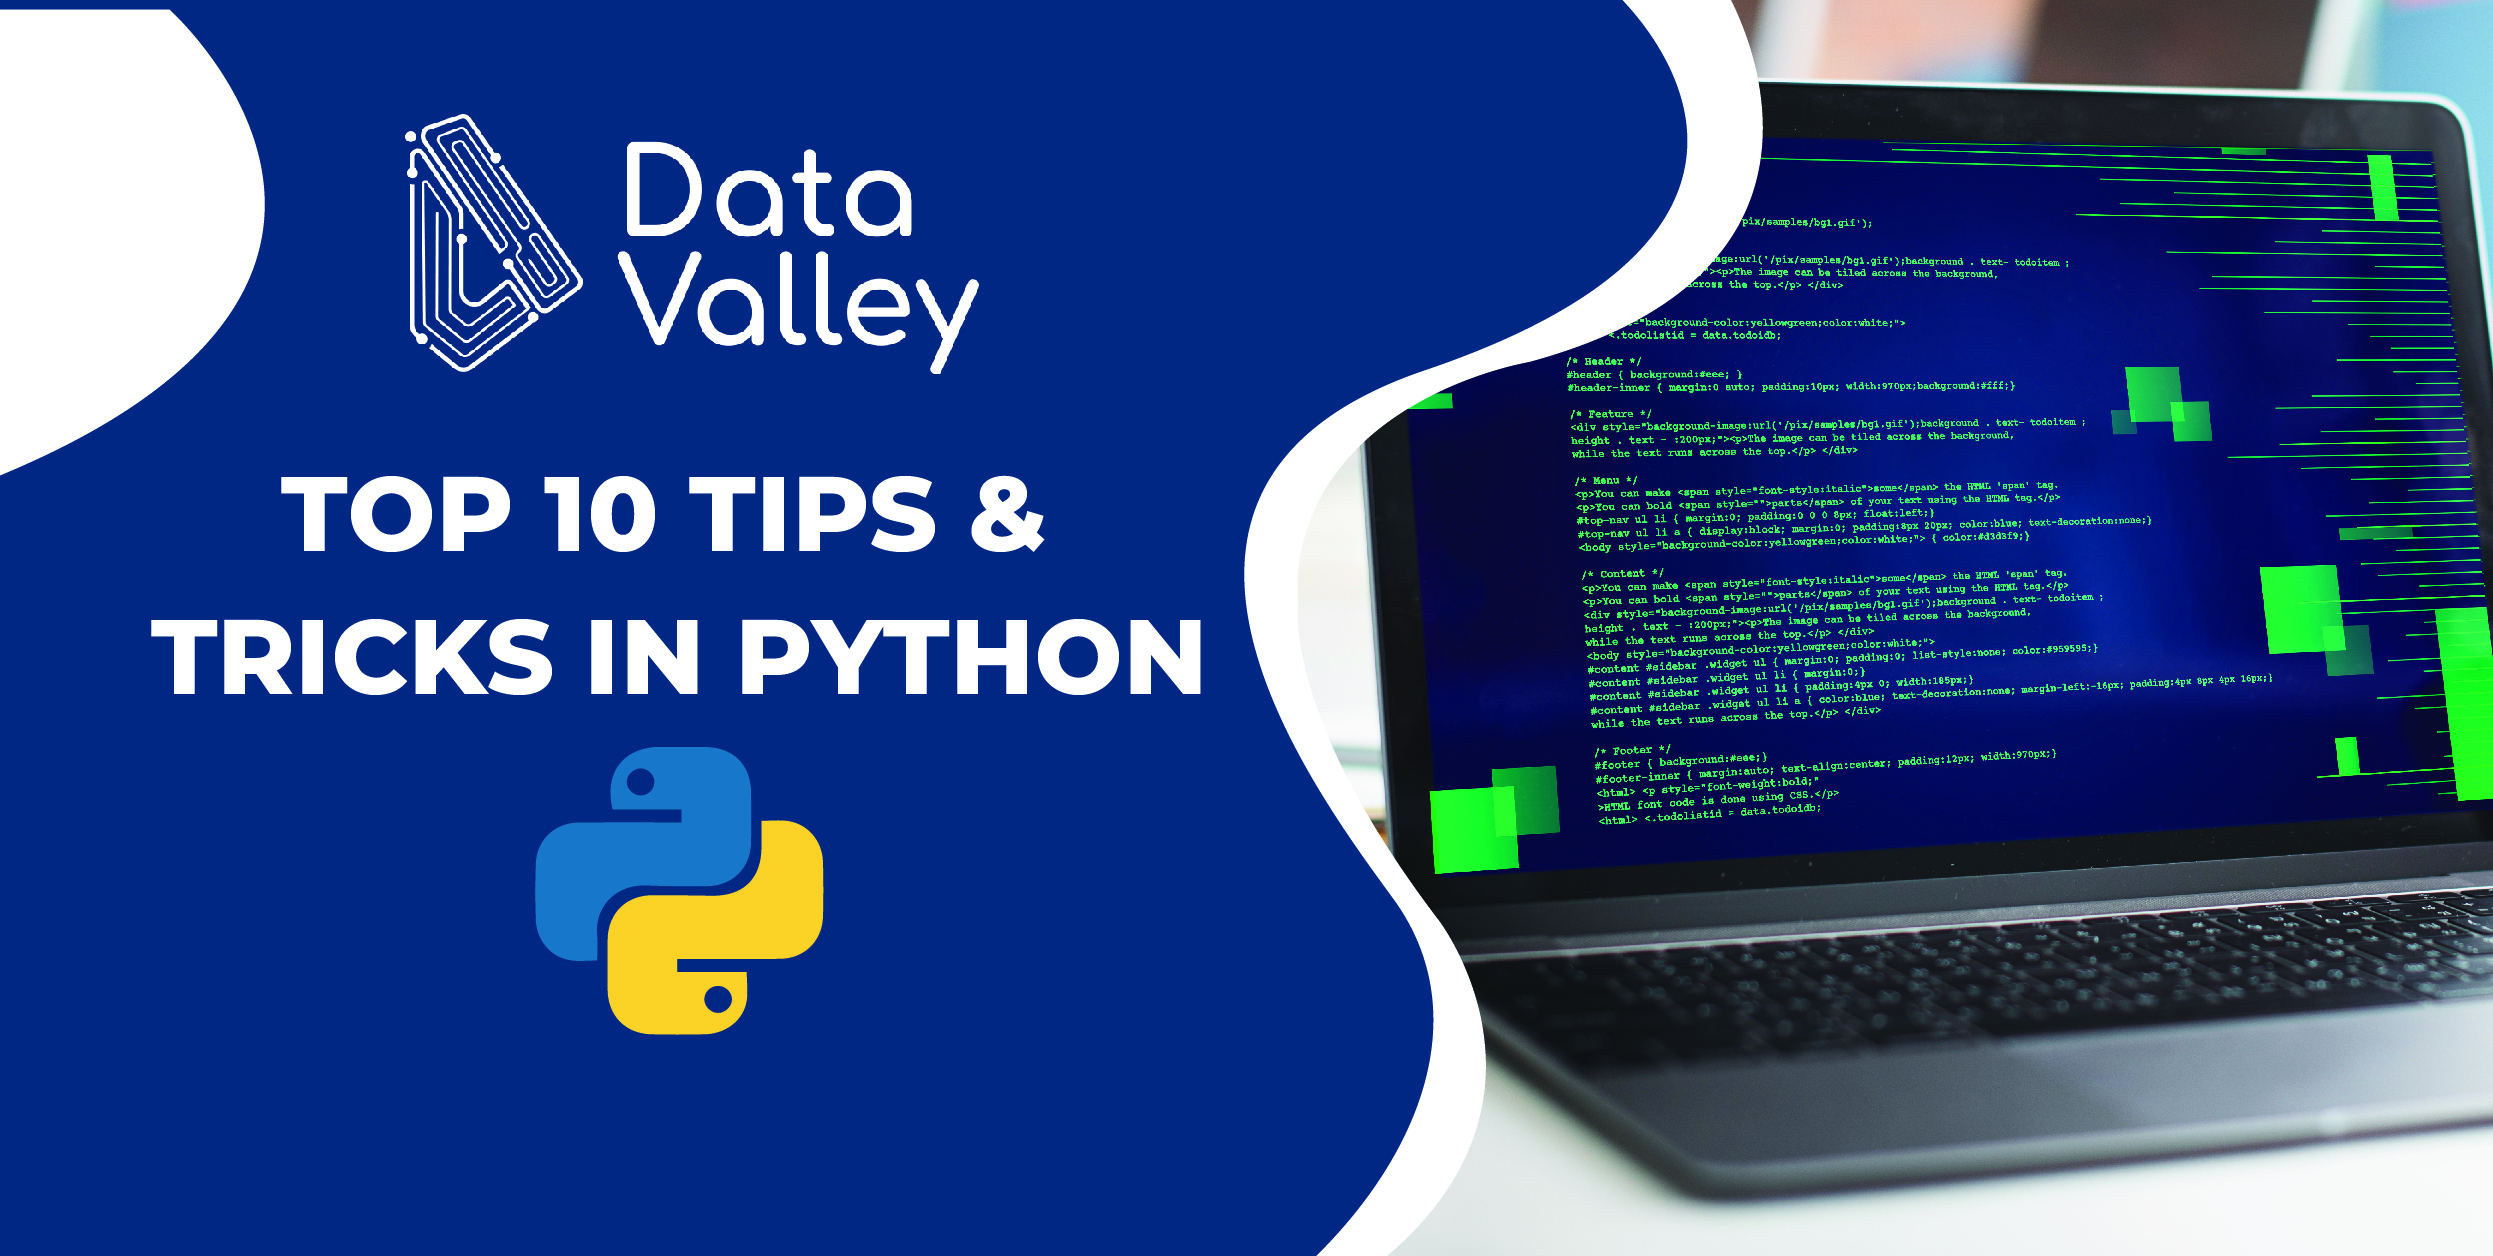 Python là một ngôn ngữ lập trình đa năng và phổ biến. Hãy khám phá top 10 mẹo và thủ thuật giúp bạn viết code tốt hơn với hình nền màu mép đầy sáng tạo từ DataValley.